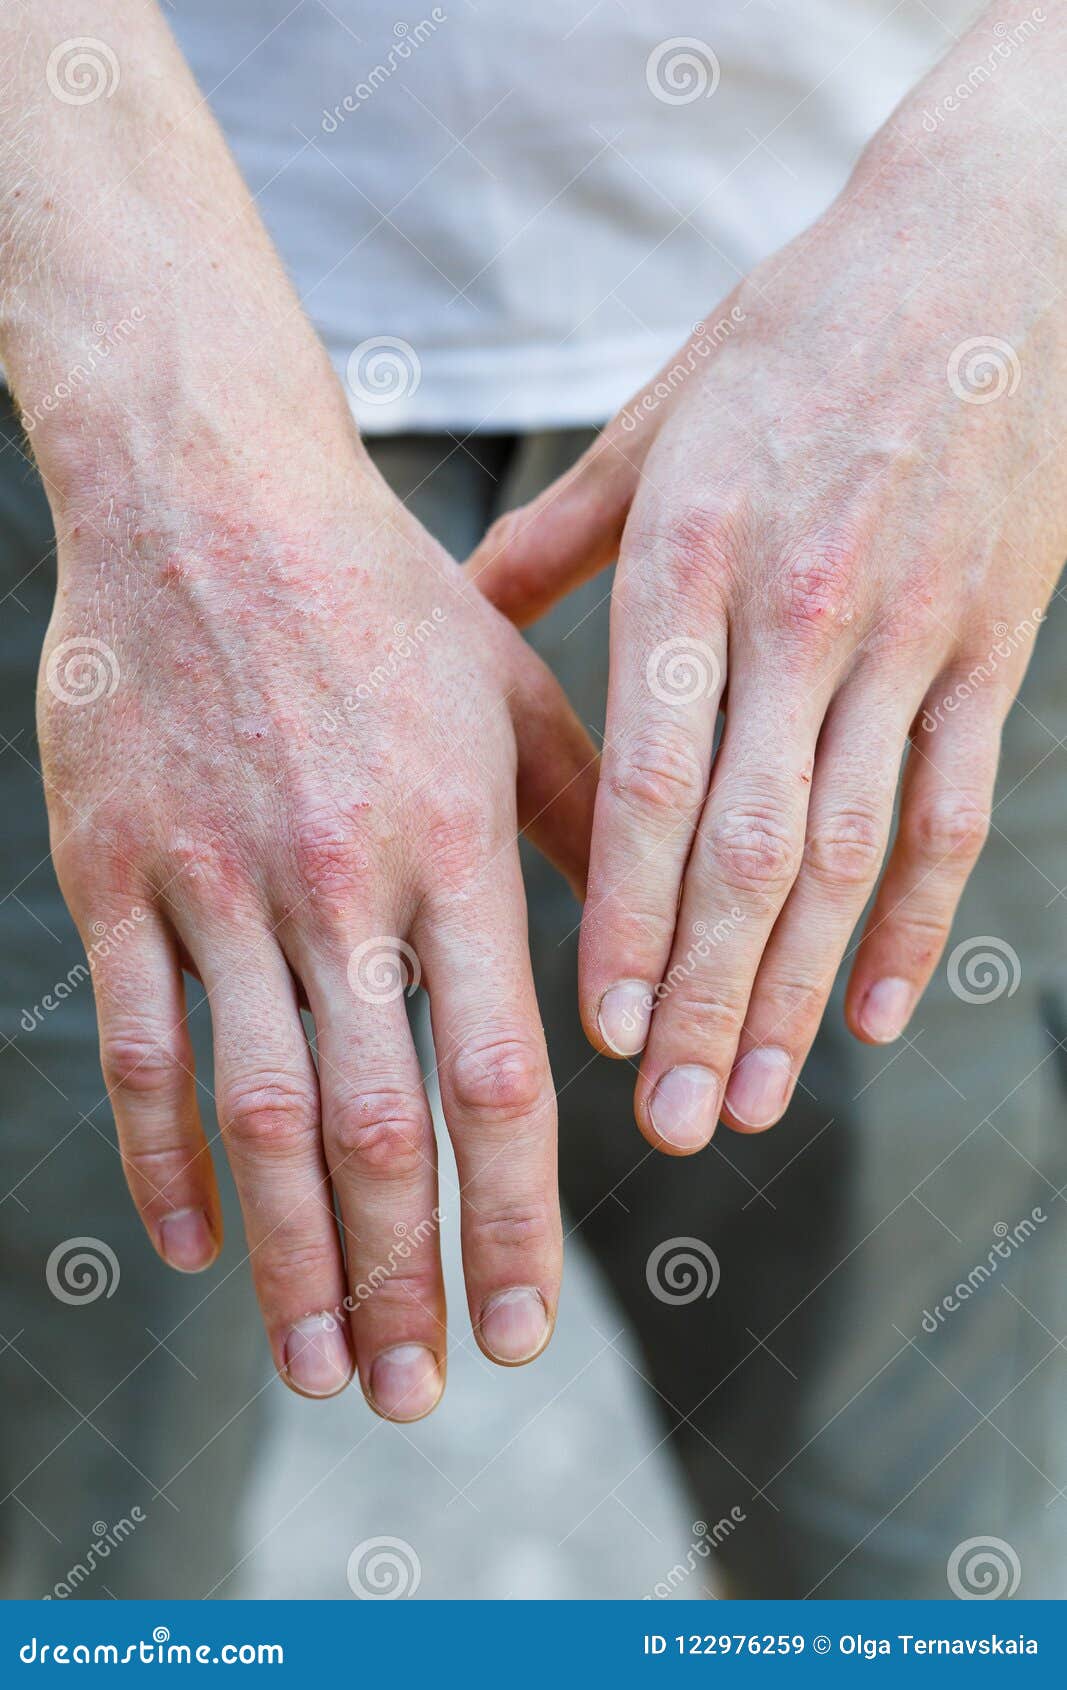 plaque psoriasis hands pictures